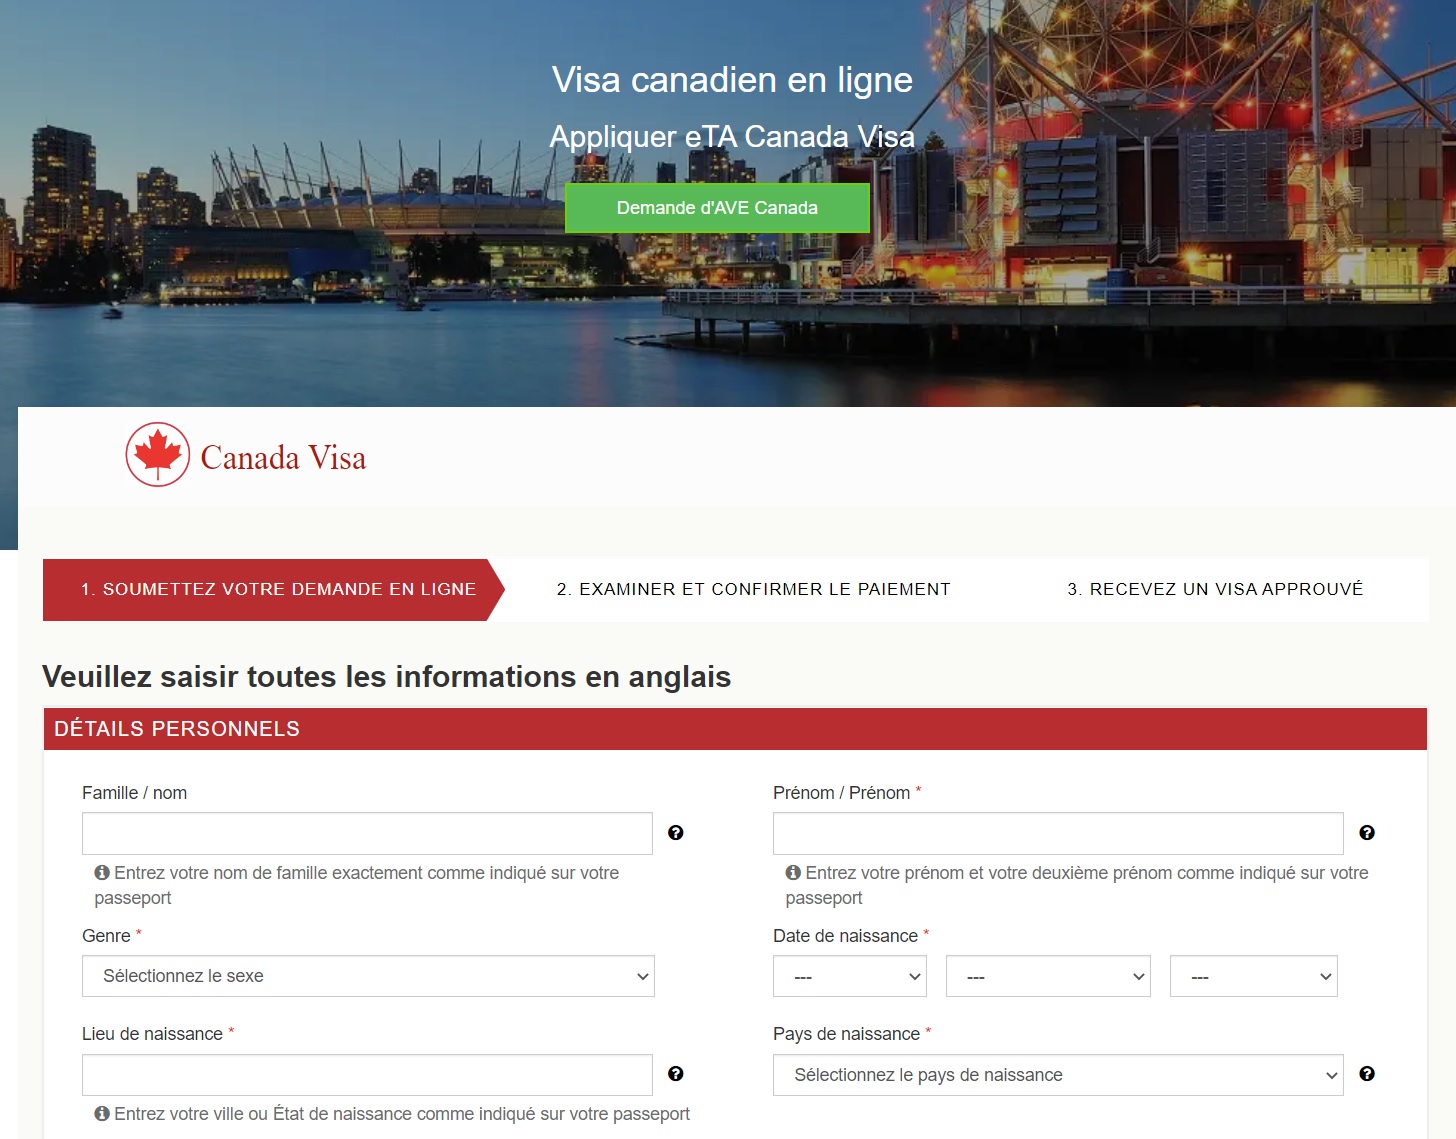 Assistance linguistique en ligne pour les visas canadiens